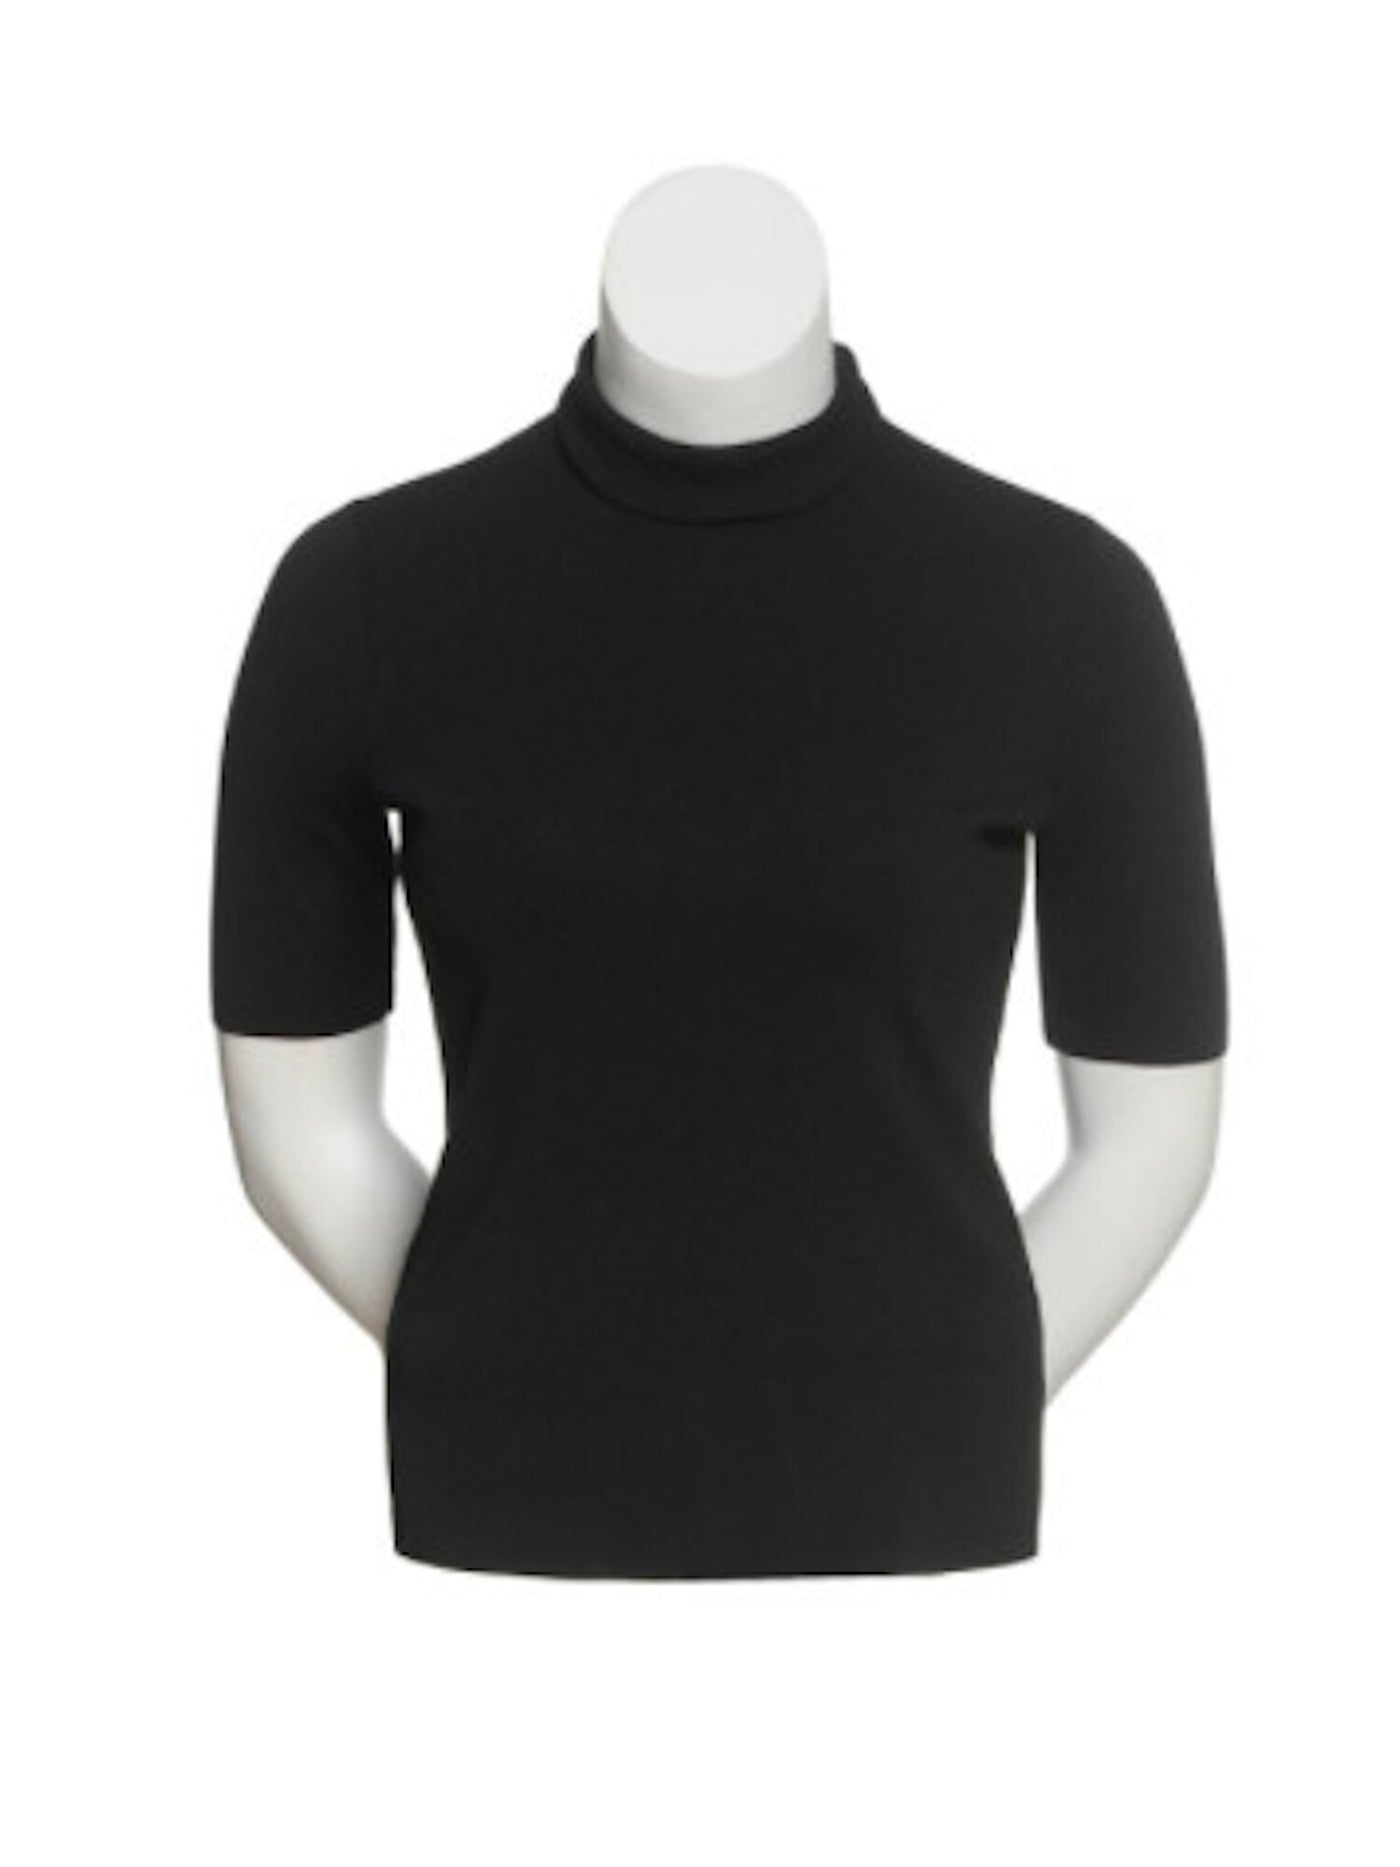 ANNE KLEIN Womens Black Short Sleeve Crew Neck T-Shirt S